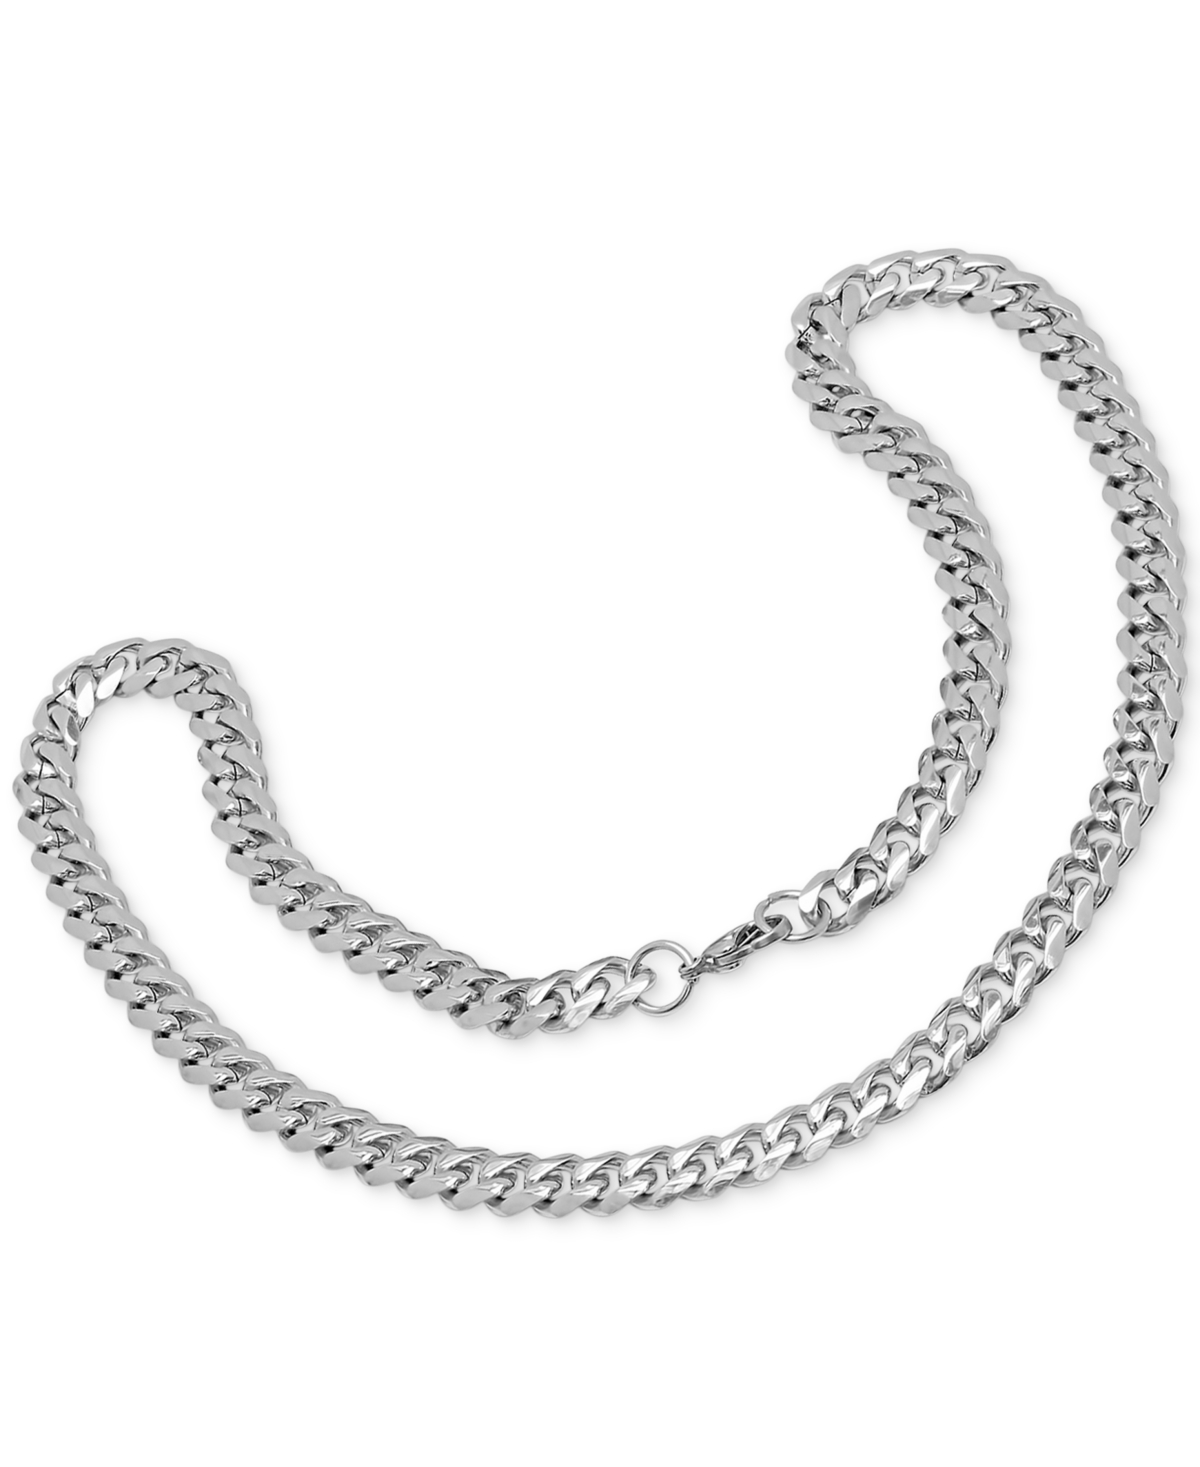 Shop Steeltime Men's Silver-tone Chain Link Necklace & Bracelet Set